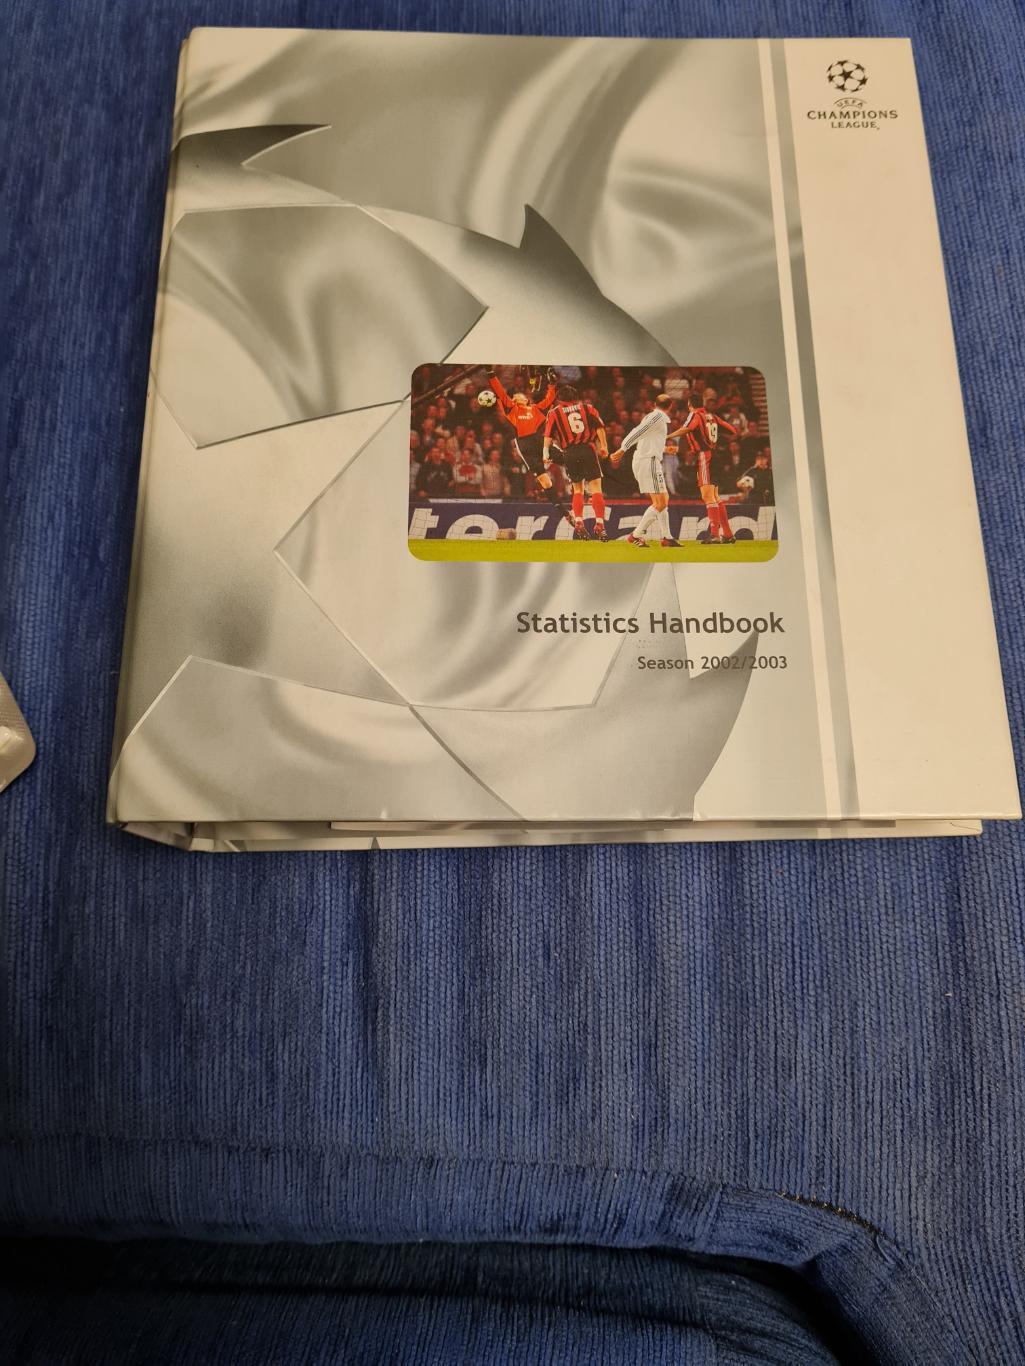 Statistic Handbook. 2002/2003.Лига чемпионов. Спартак.